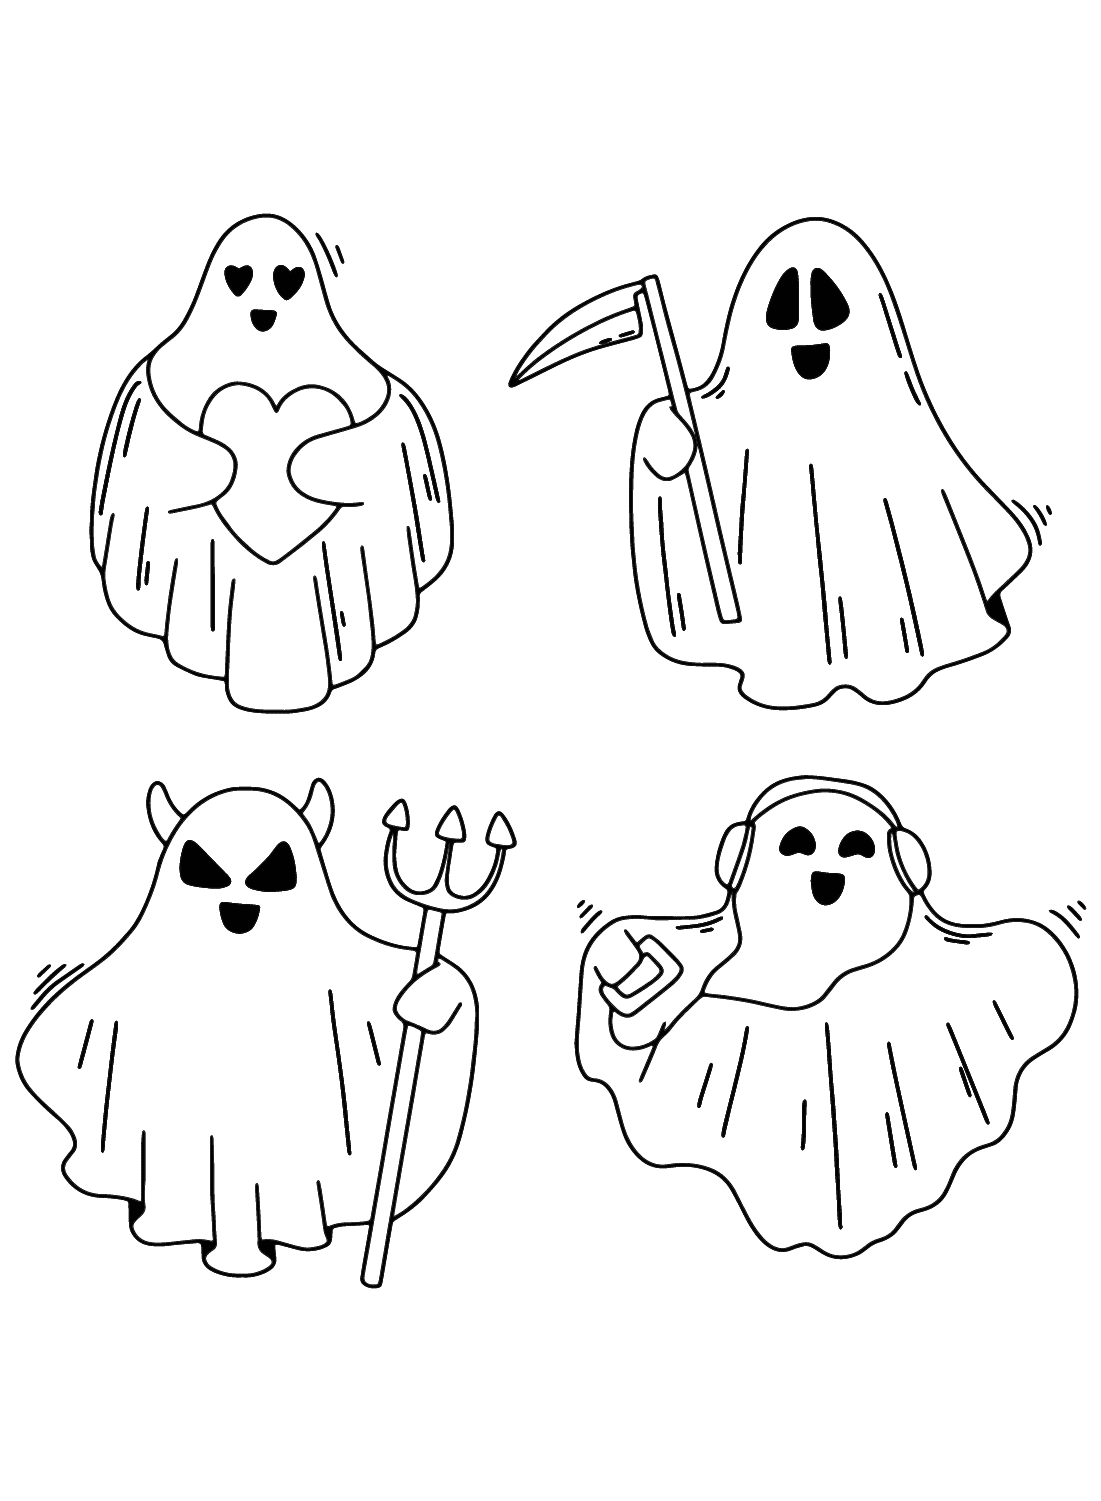 Página para colorear imprimible de fantasma de Ghost